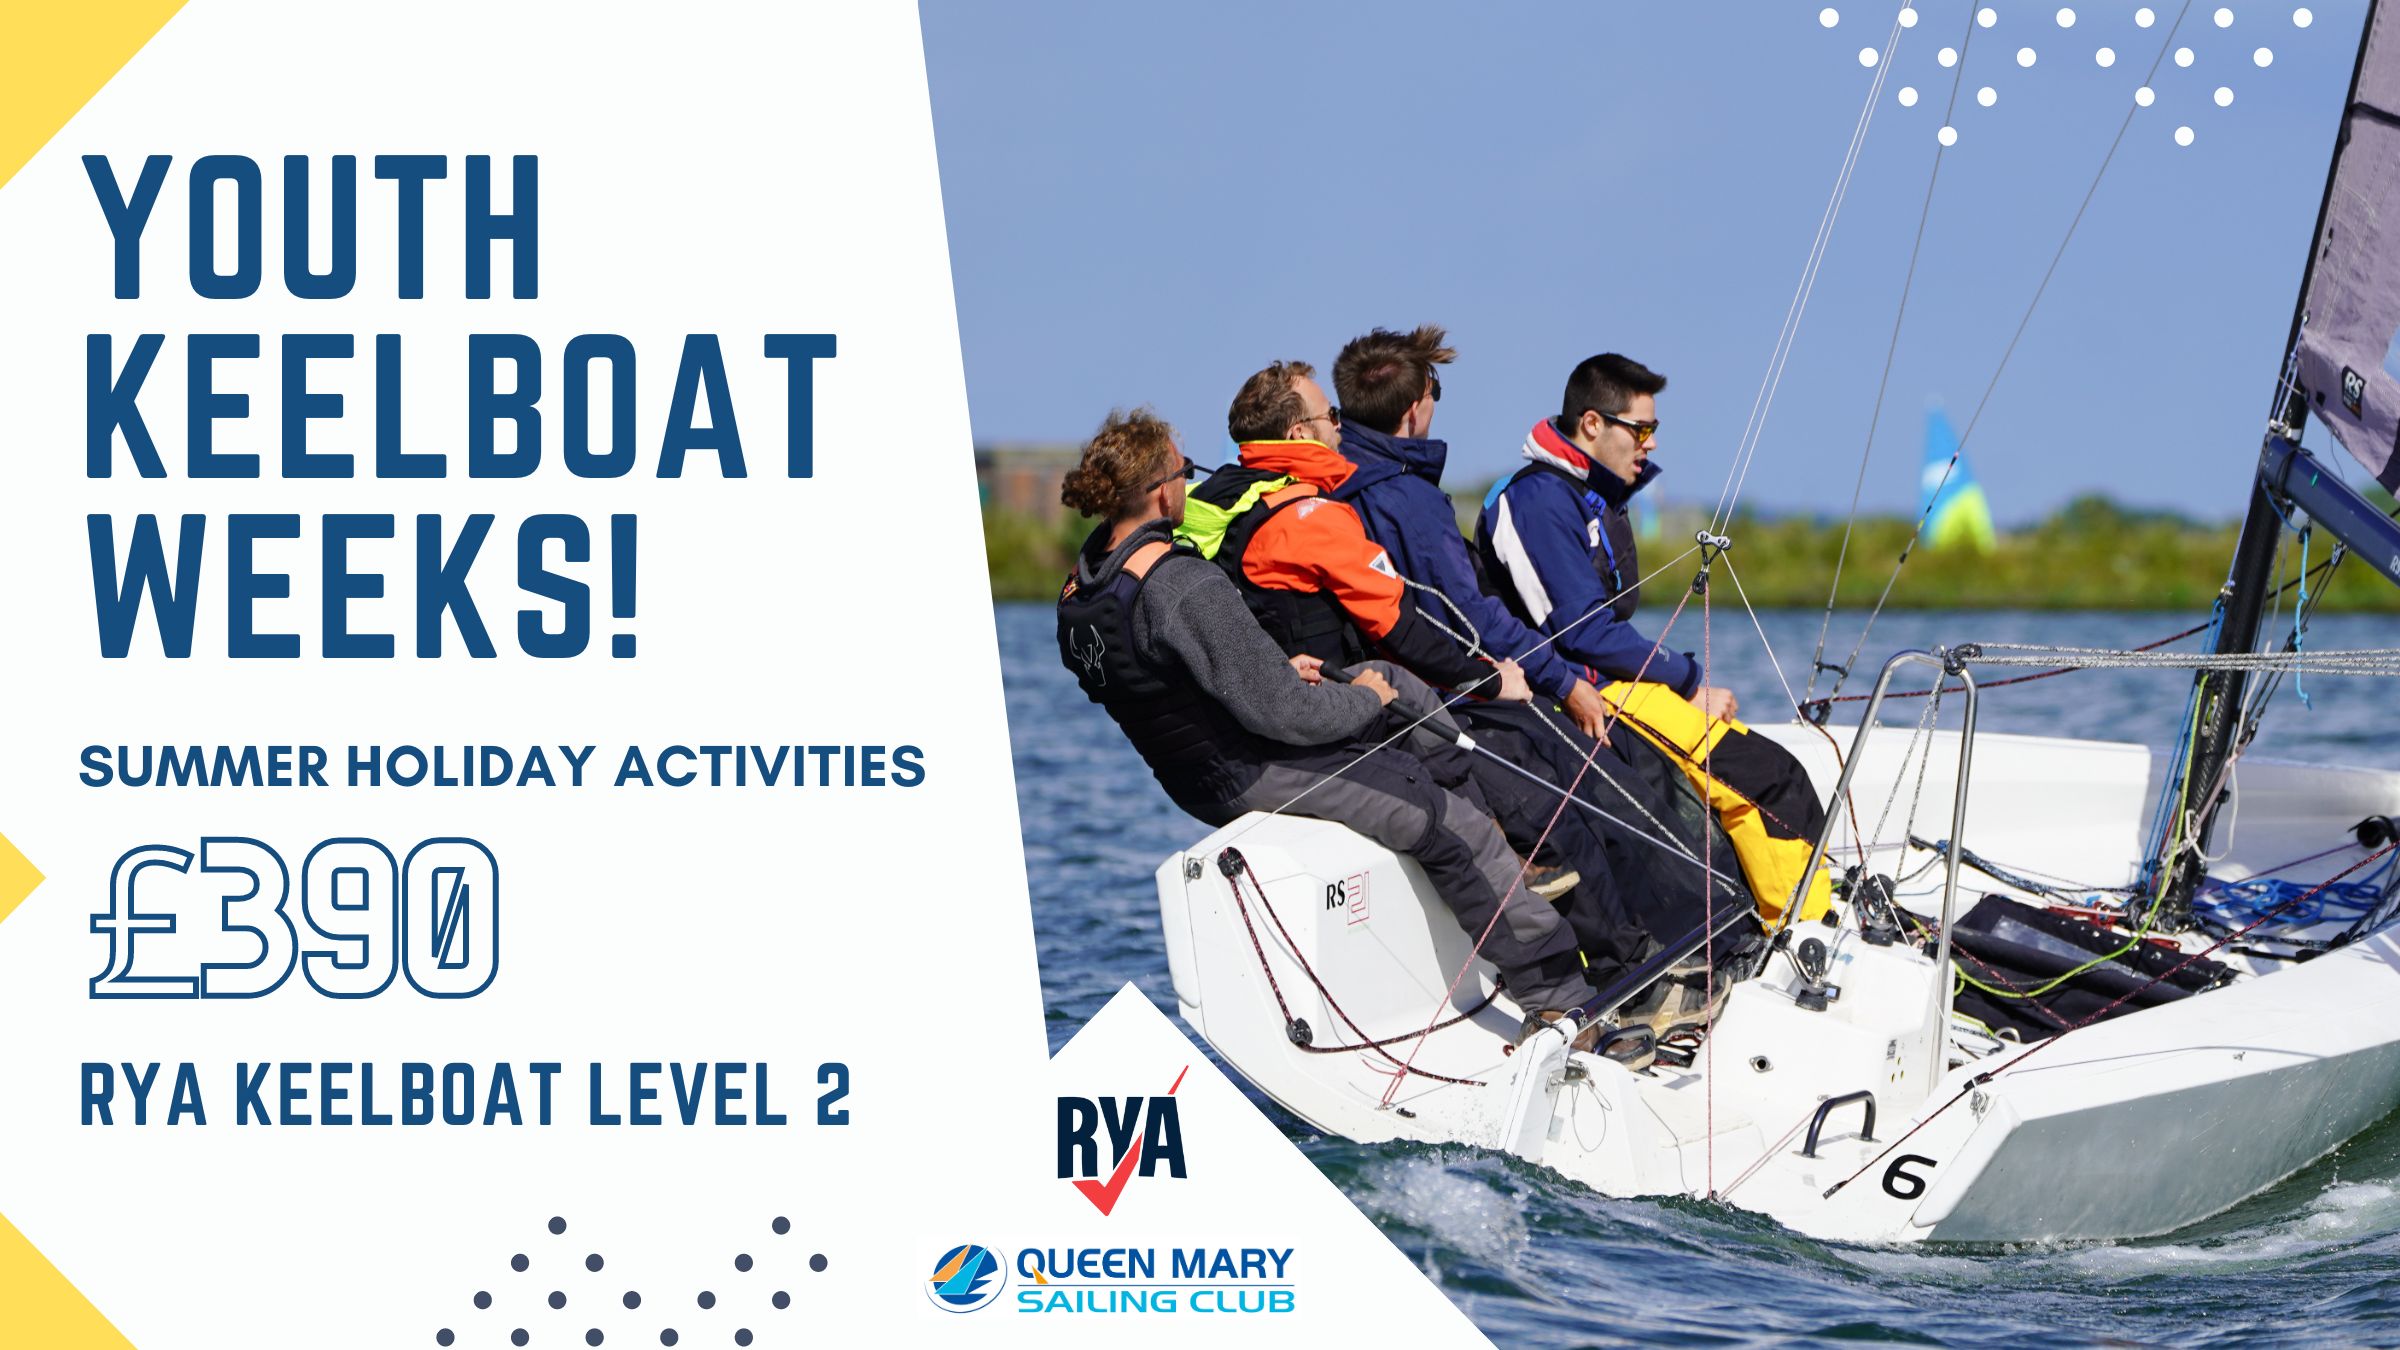 Youth keelboat RYA Level 2 Activity Weeks